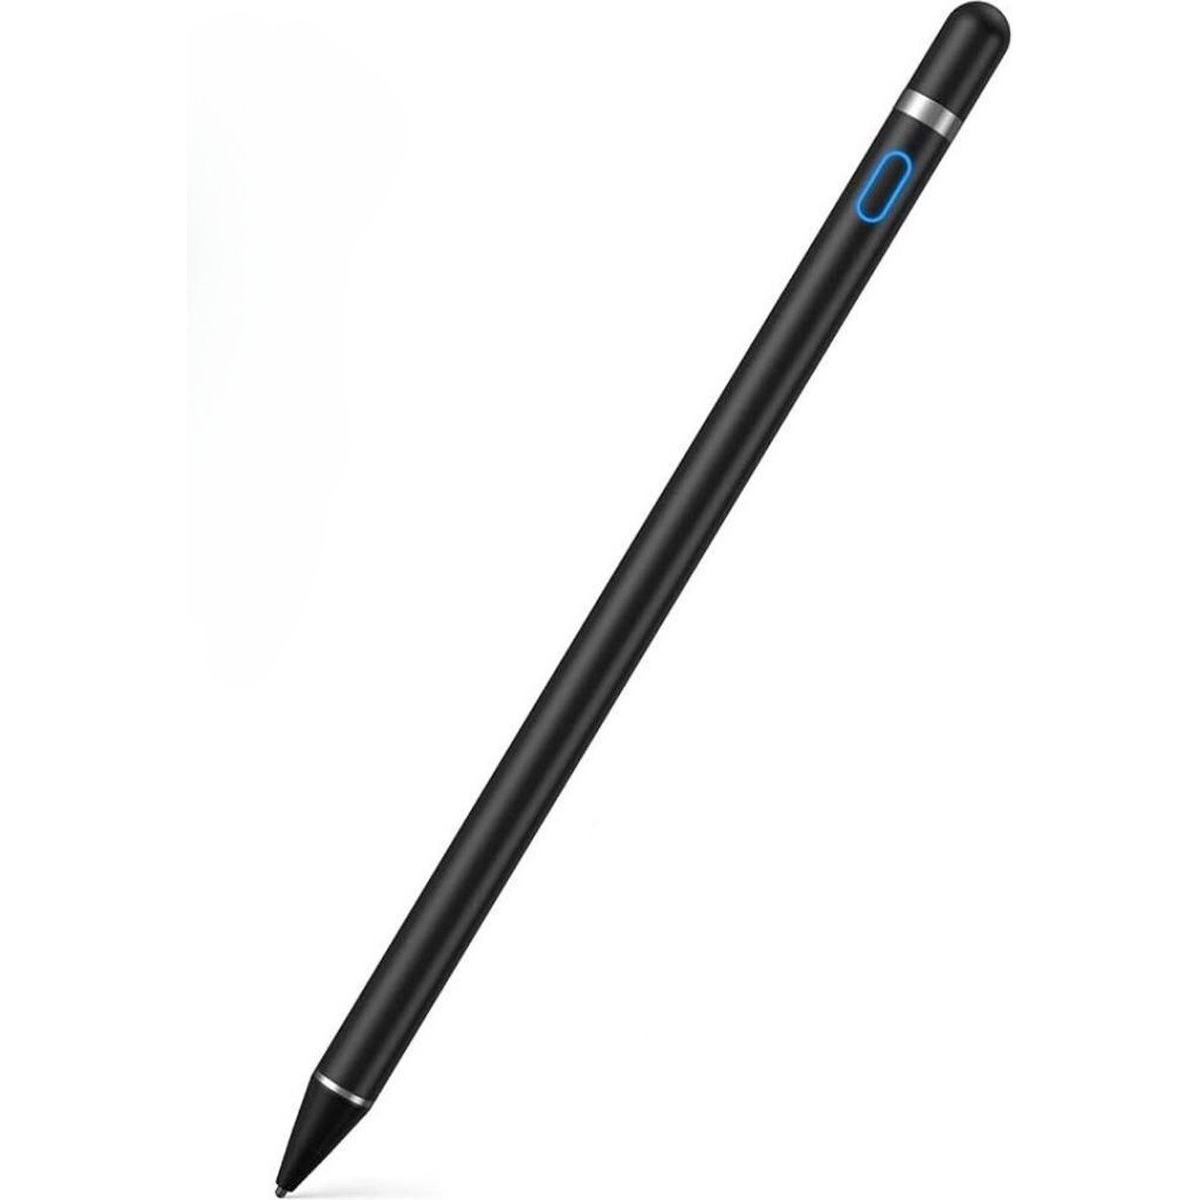 TIKKENS Stylus Pen mit Schwarz Schreibfunktion | Stylus - Schwarz Pen Eingabestift